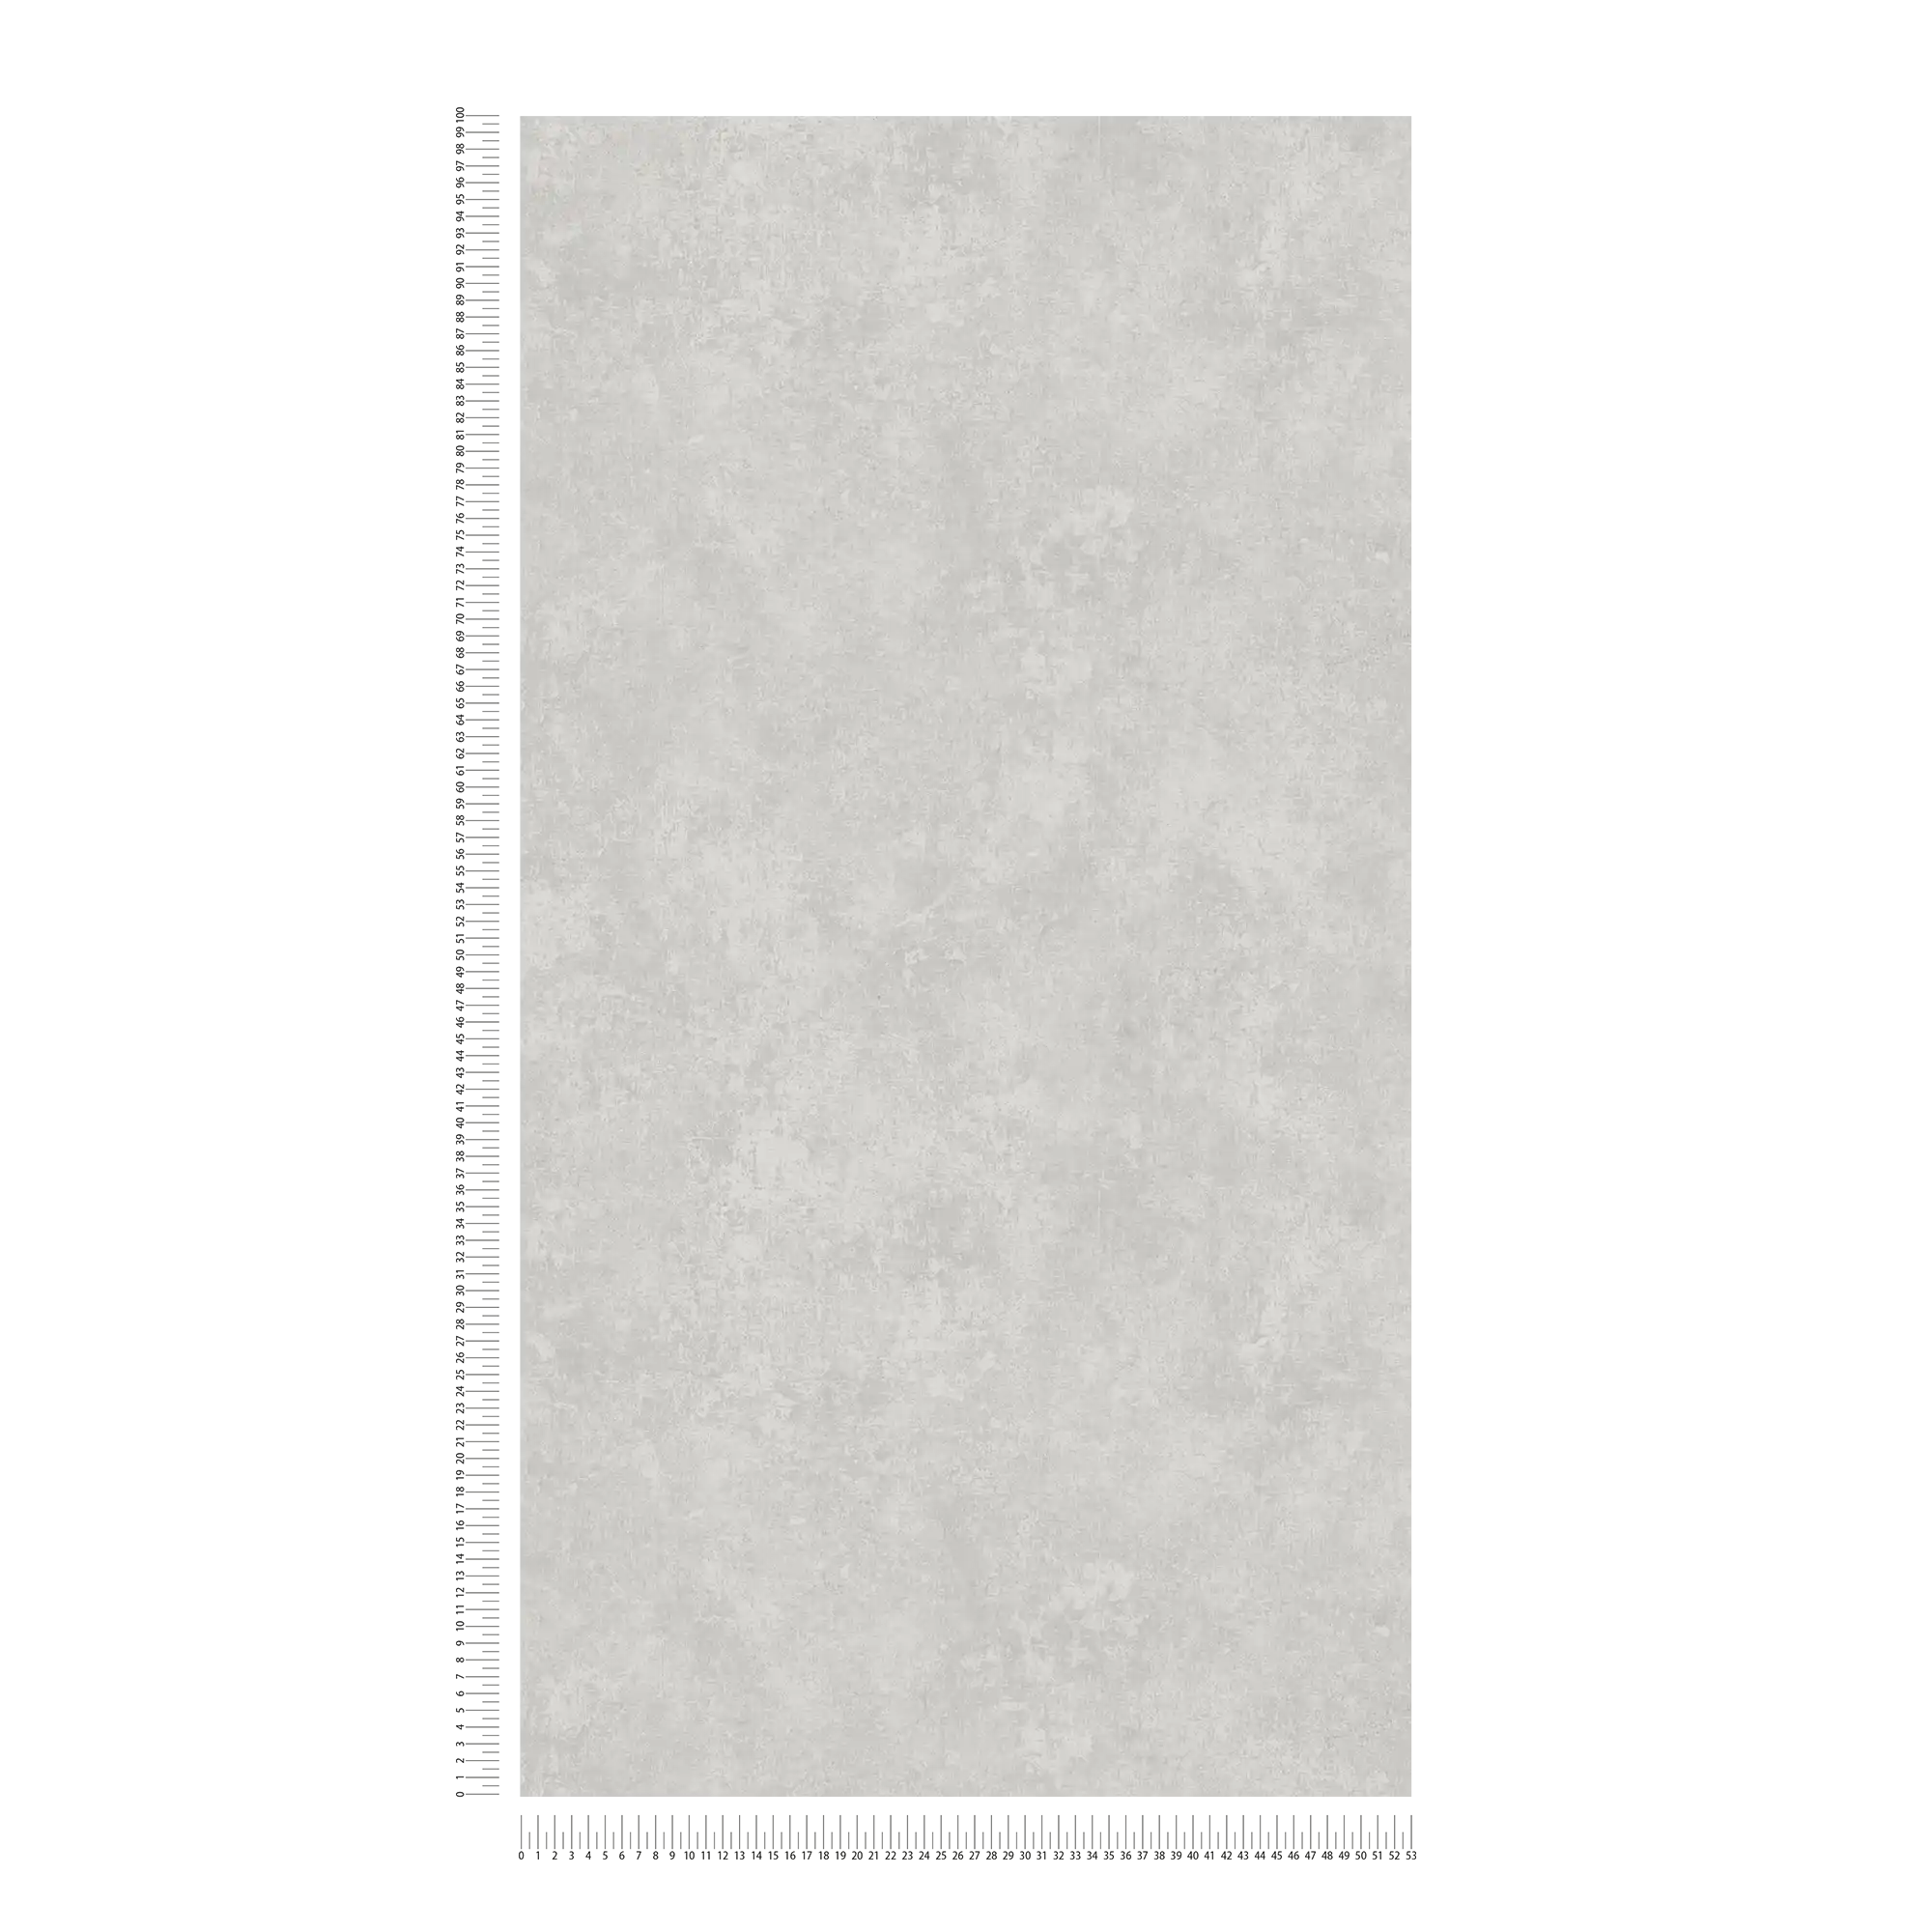             papel pintado aspecto retro y aspecto usado, color moteado - plata
        